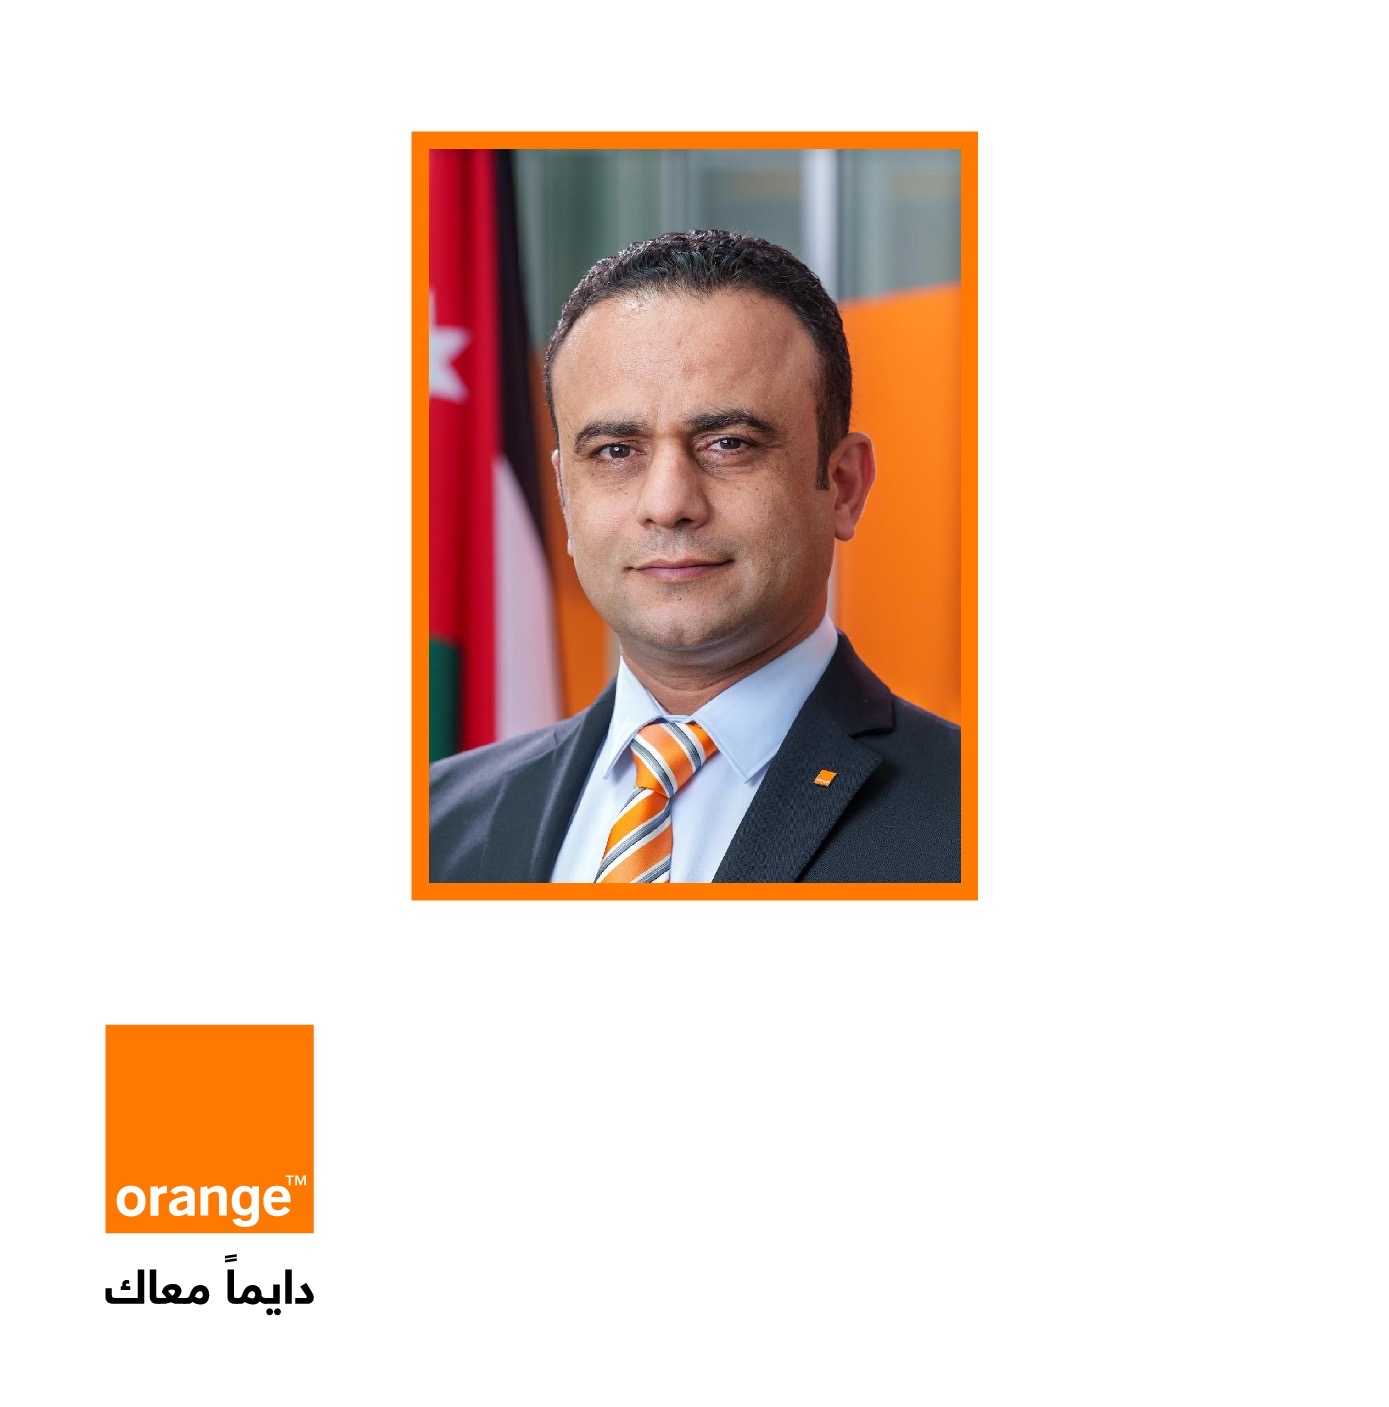 محمد أبو الغنم، المدير التنفيذي للمالية المعيّن حديثاً في أورنج الأردن .. خبرة ورؤية استراتيجية